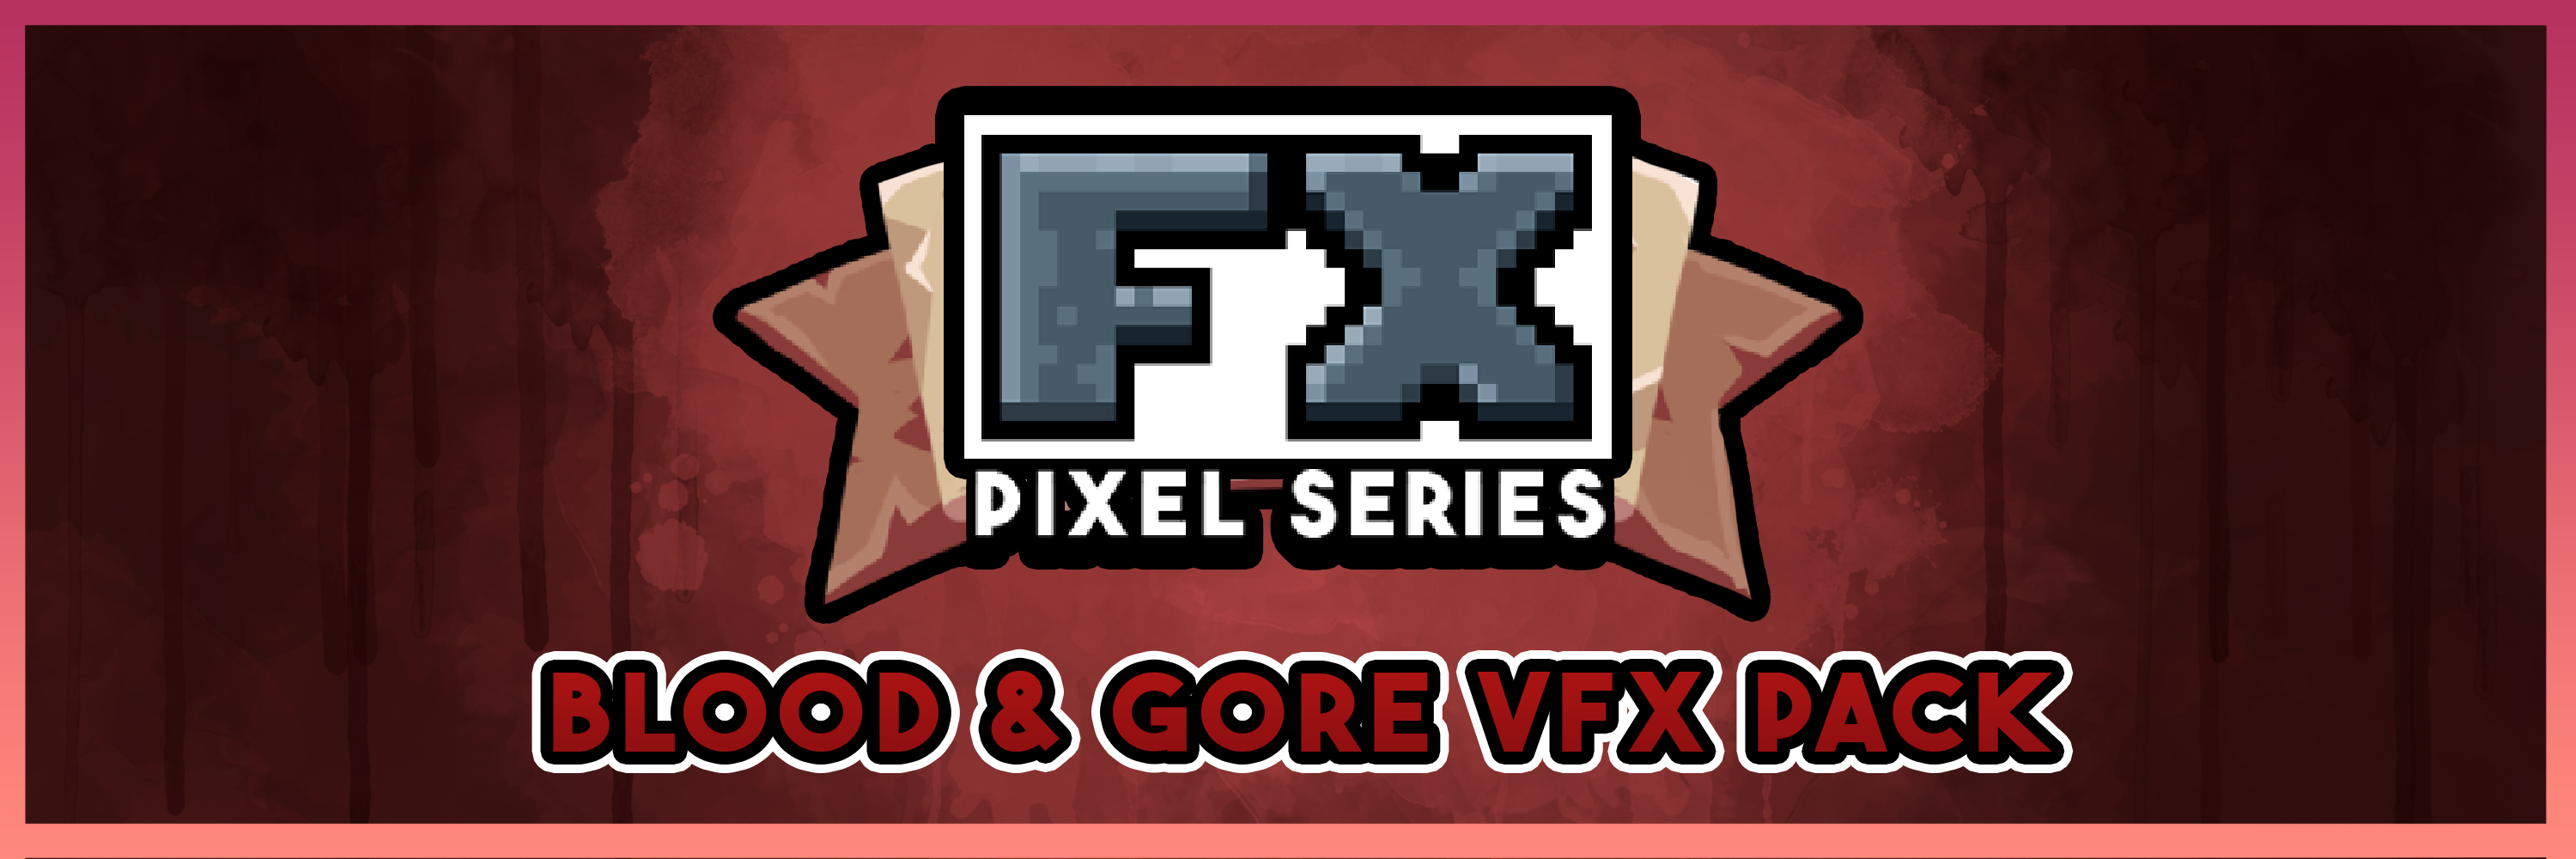 FX Pixel Series: BLOOD GORE VFX